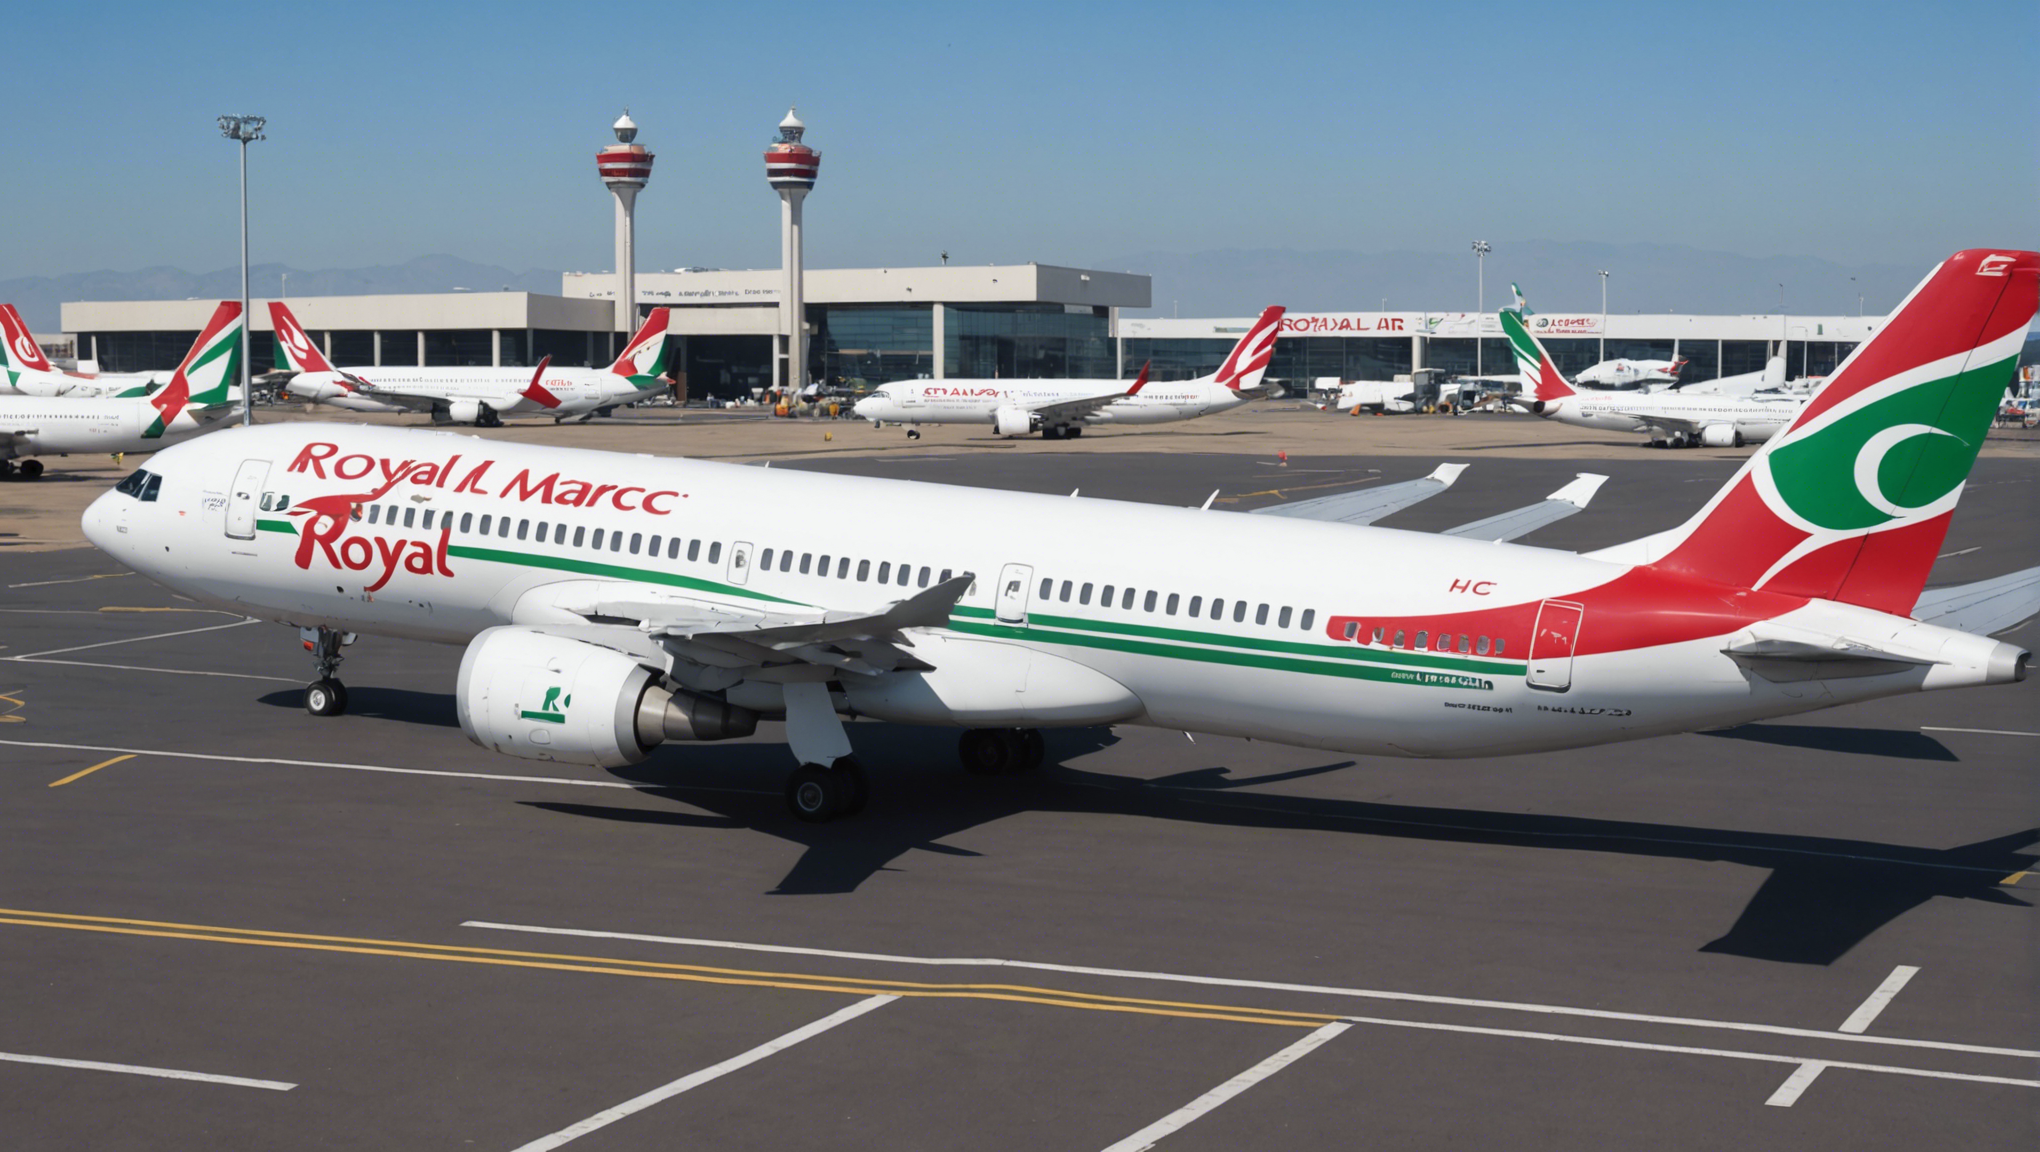 royal air maroc se prépare à accueillir l'afflux estival en augmentant ses capacités en sièges et en avions. réservez dès maintenant votre voyage avec la compagnie aérienne.